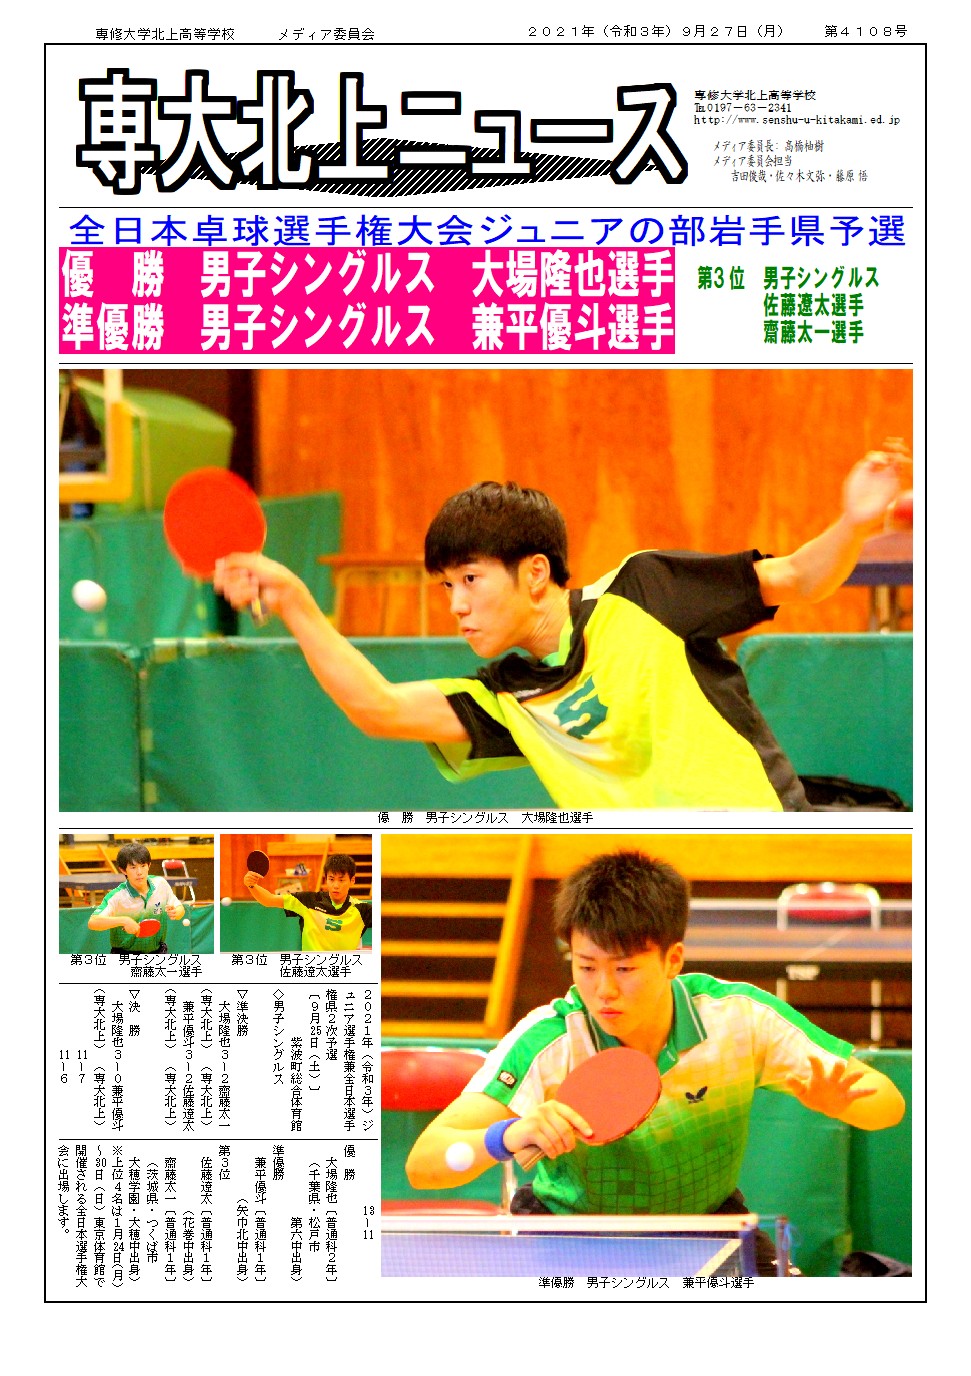 全日本卓球選手権ジュニアの部県予選で男子上位占める